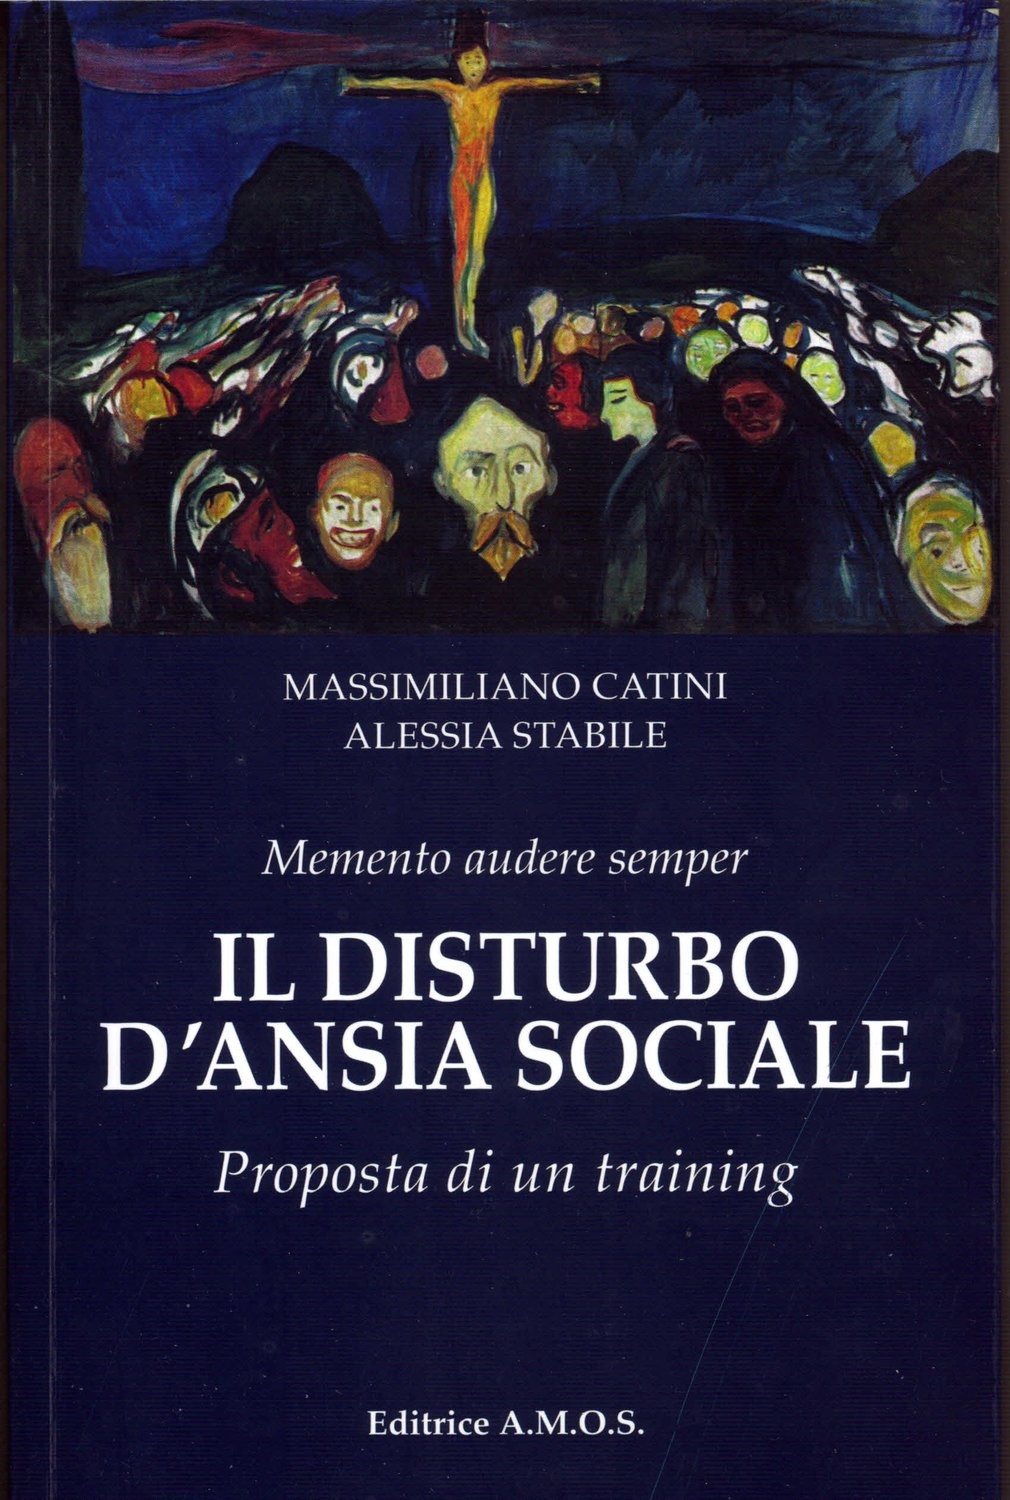 Il disturbo d'ansia sociale. Proposta di un training.
Massimiliano Catini - Alessia Stabile